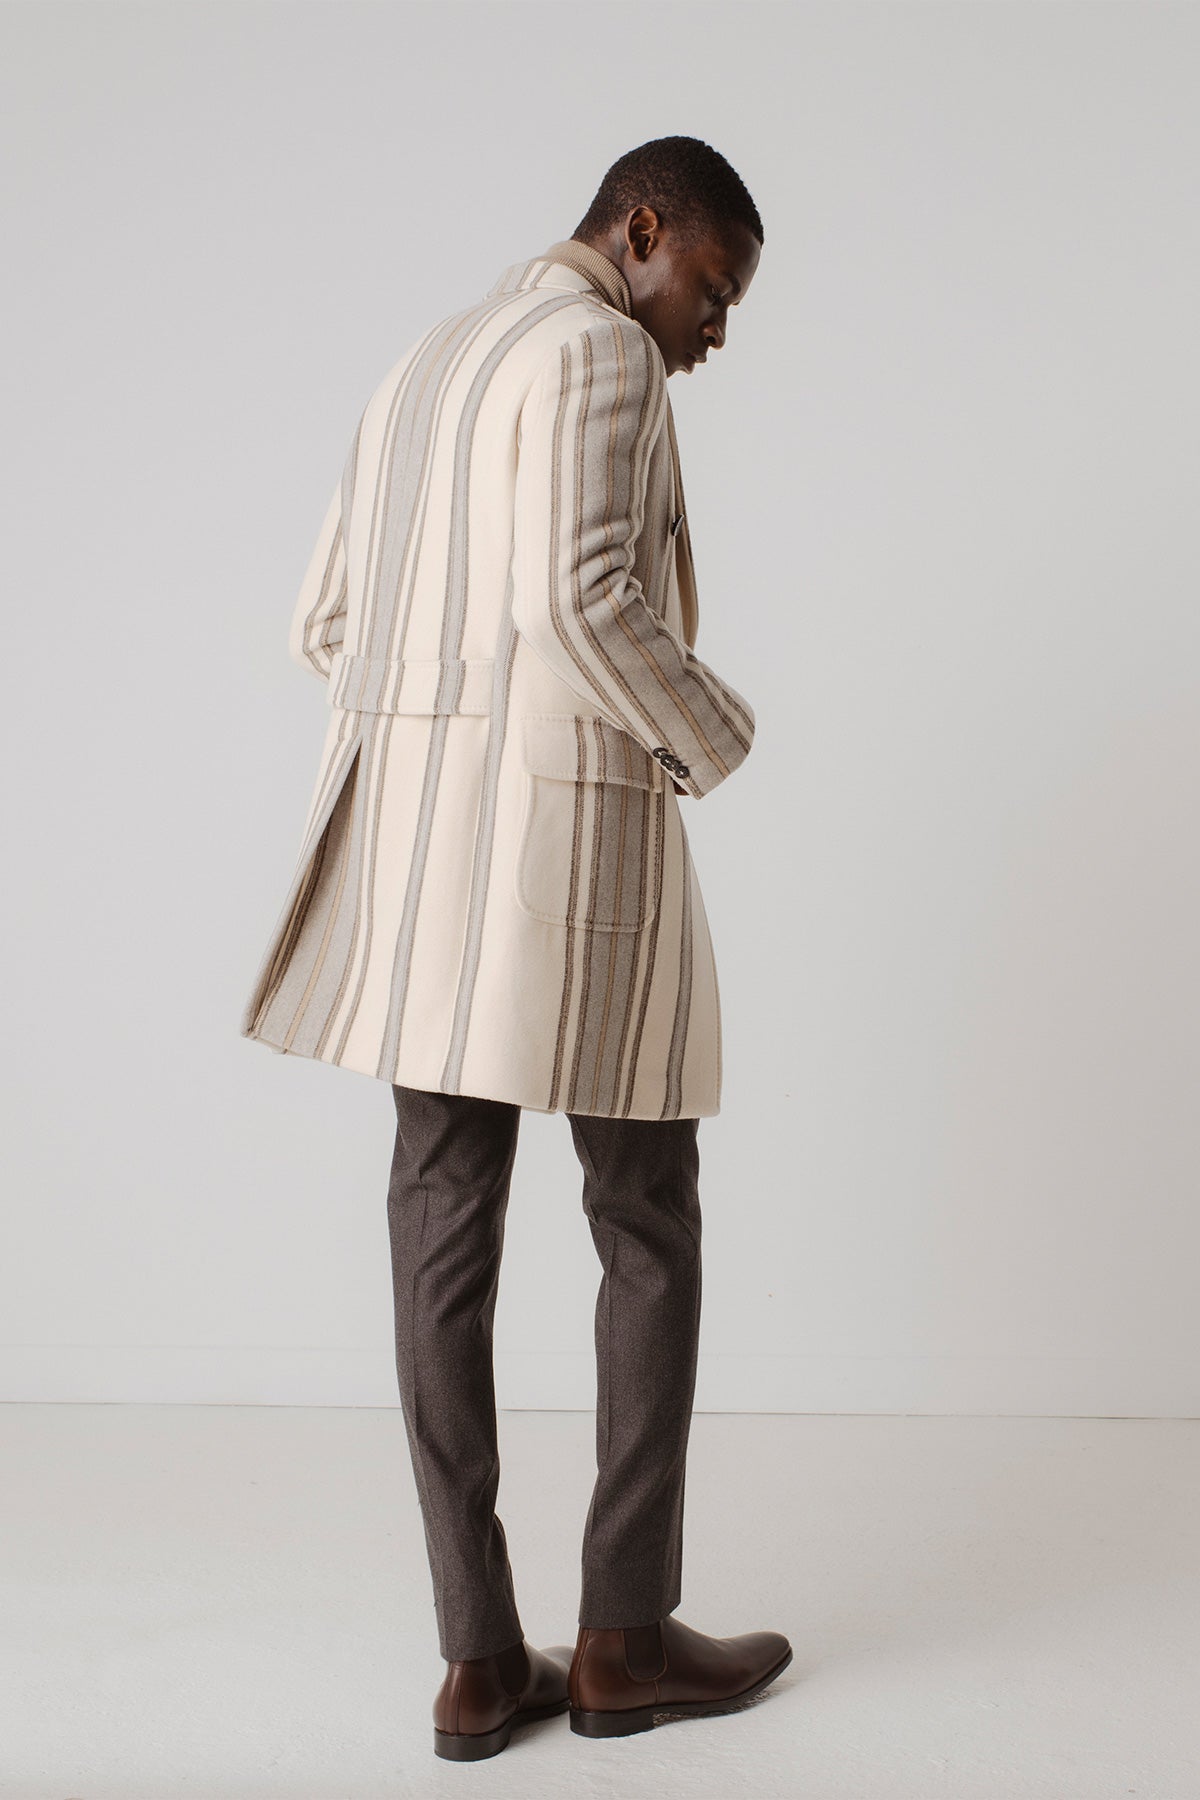 Manteau long classique en laine pour homme